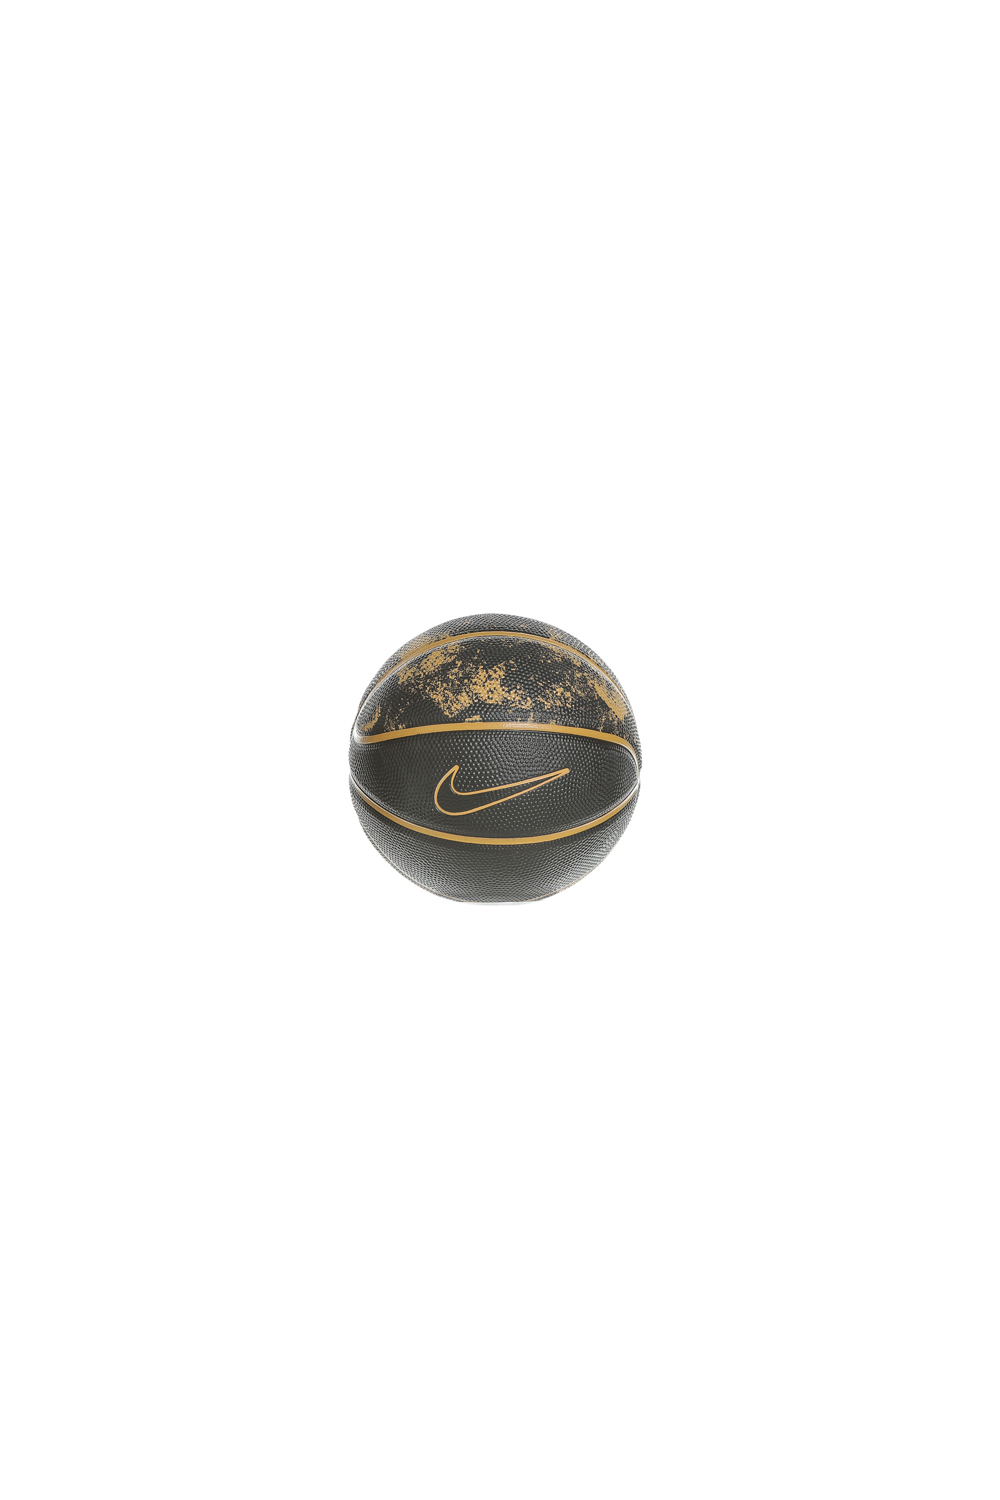 Γυναικεία/Αξεσουάρ/Αθλητικά Είδη/Μπάλες NIKE - Μπάλα basketball mini NIKE LEBRON SKILLS N.KI.14.03 μαύρη χρυσή